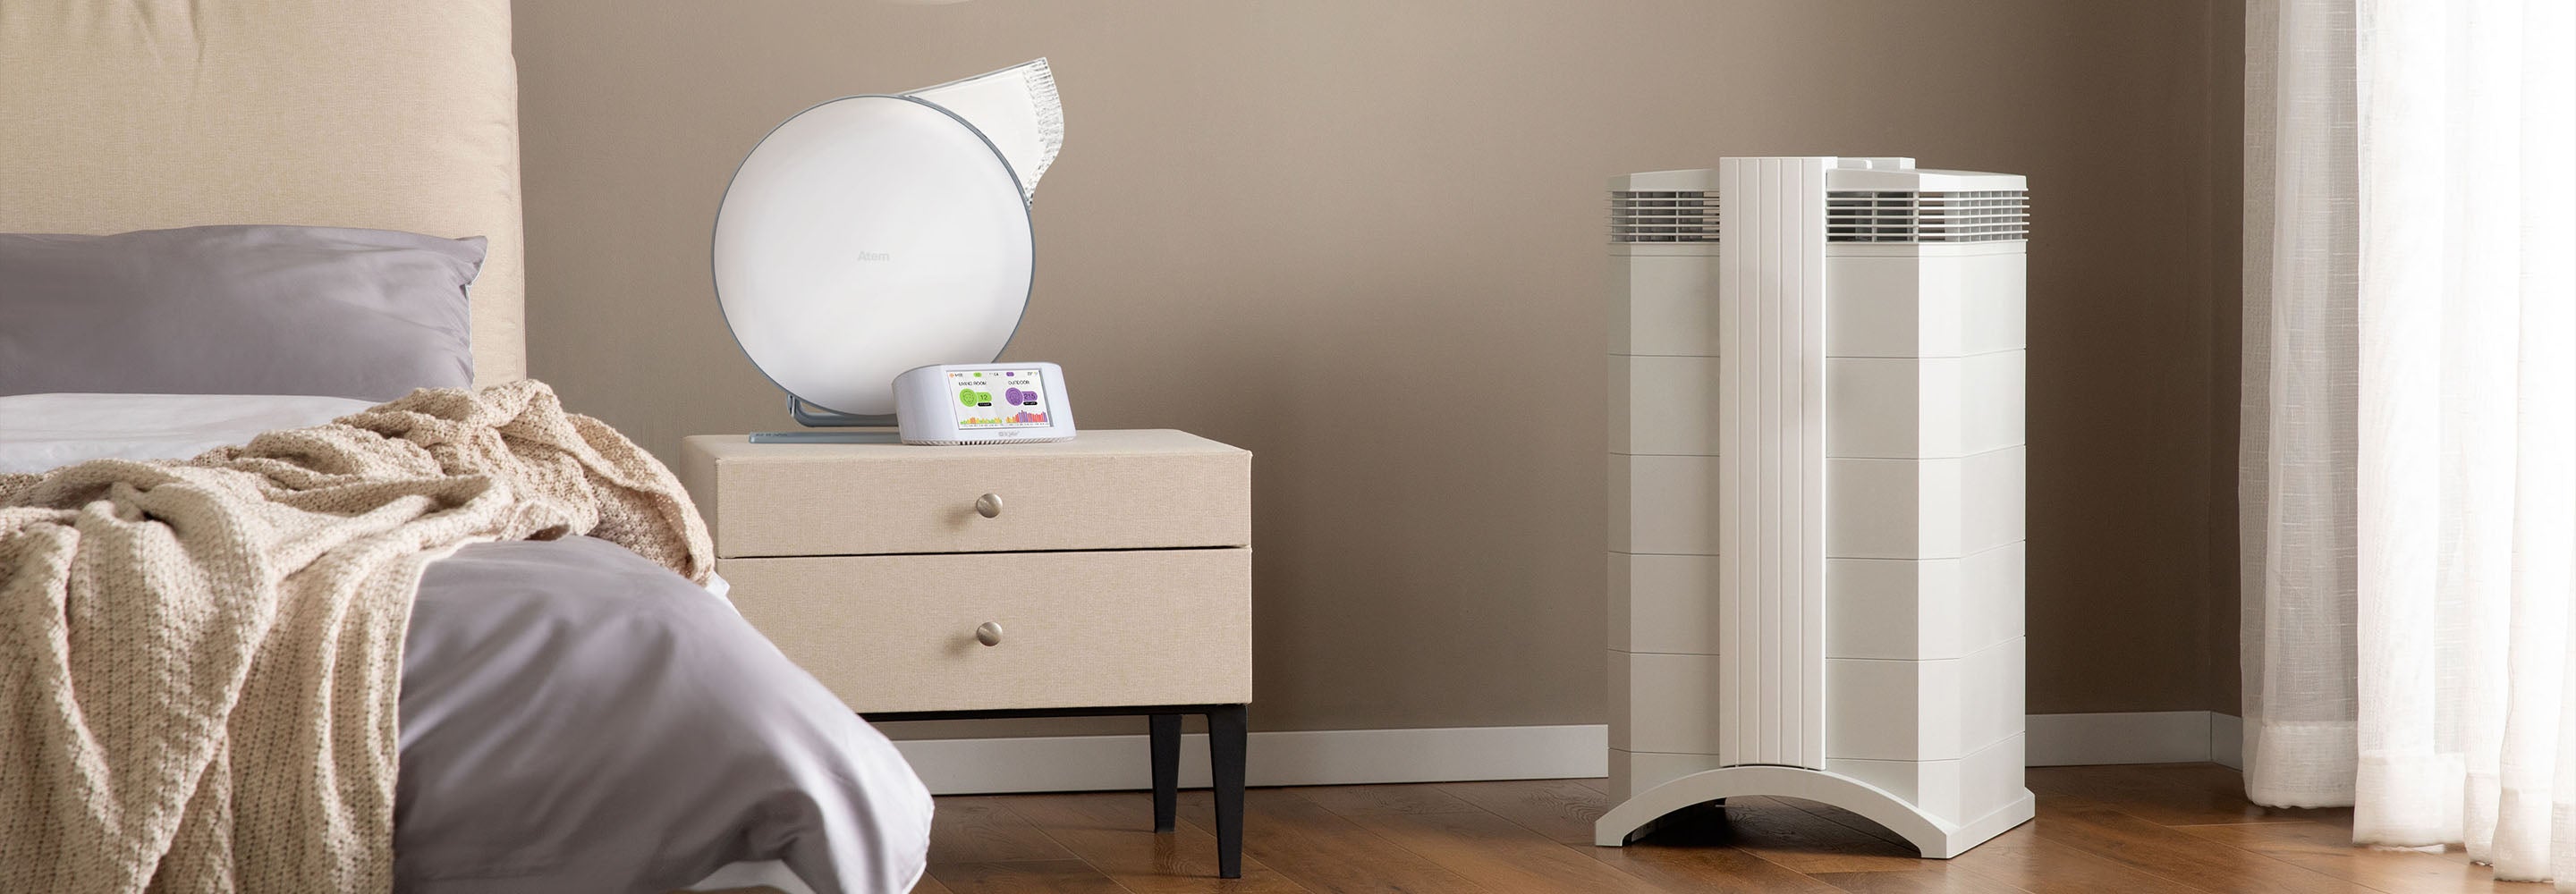 No debería faltar en ninguna casa: un purificador de aire inteligente, con  cupón de descuento en